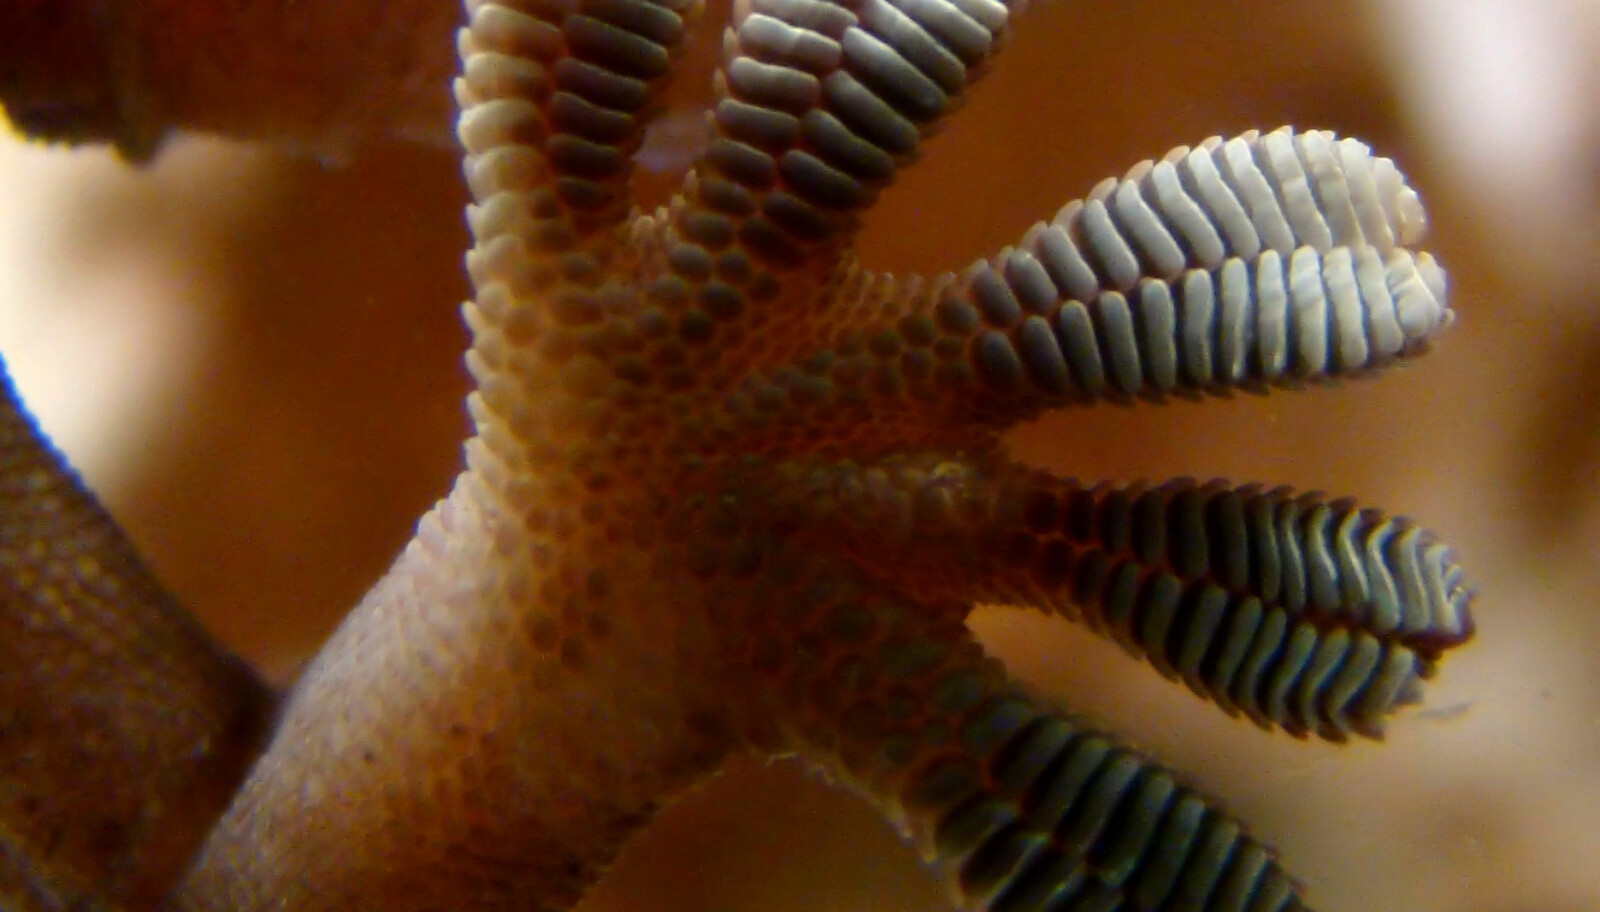 <b>GRIPEHÅR:</b> De små hårene under gekkoens føtter gjør at den kan gå rett opp speilblanke overflaster